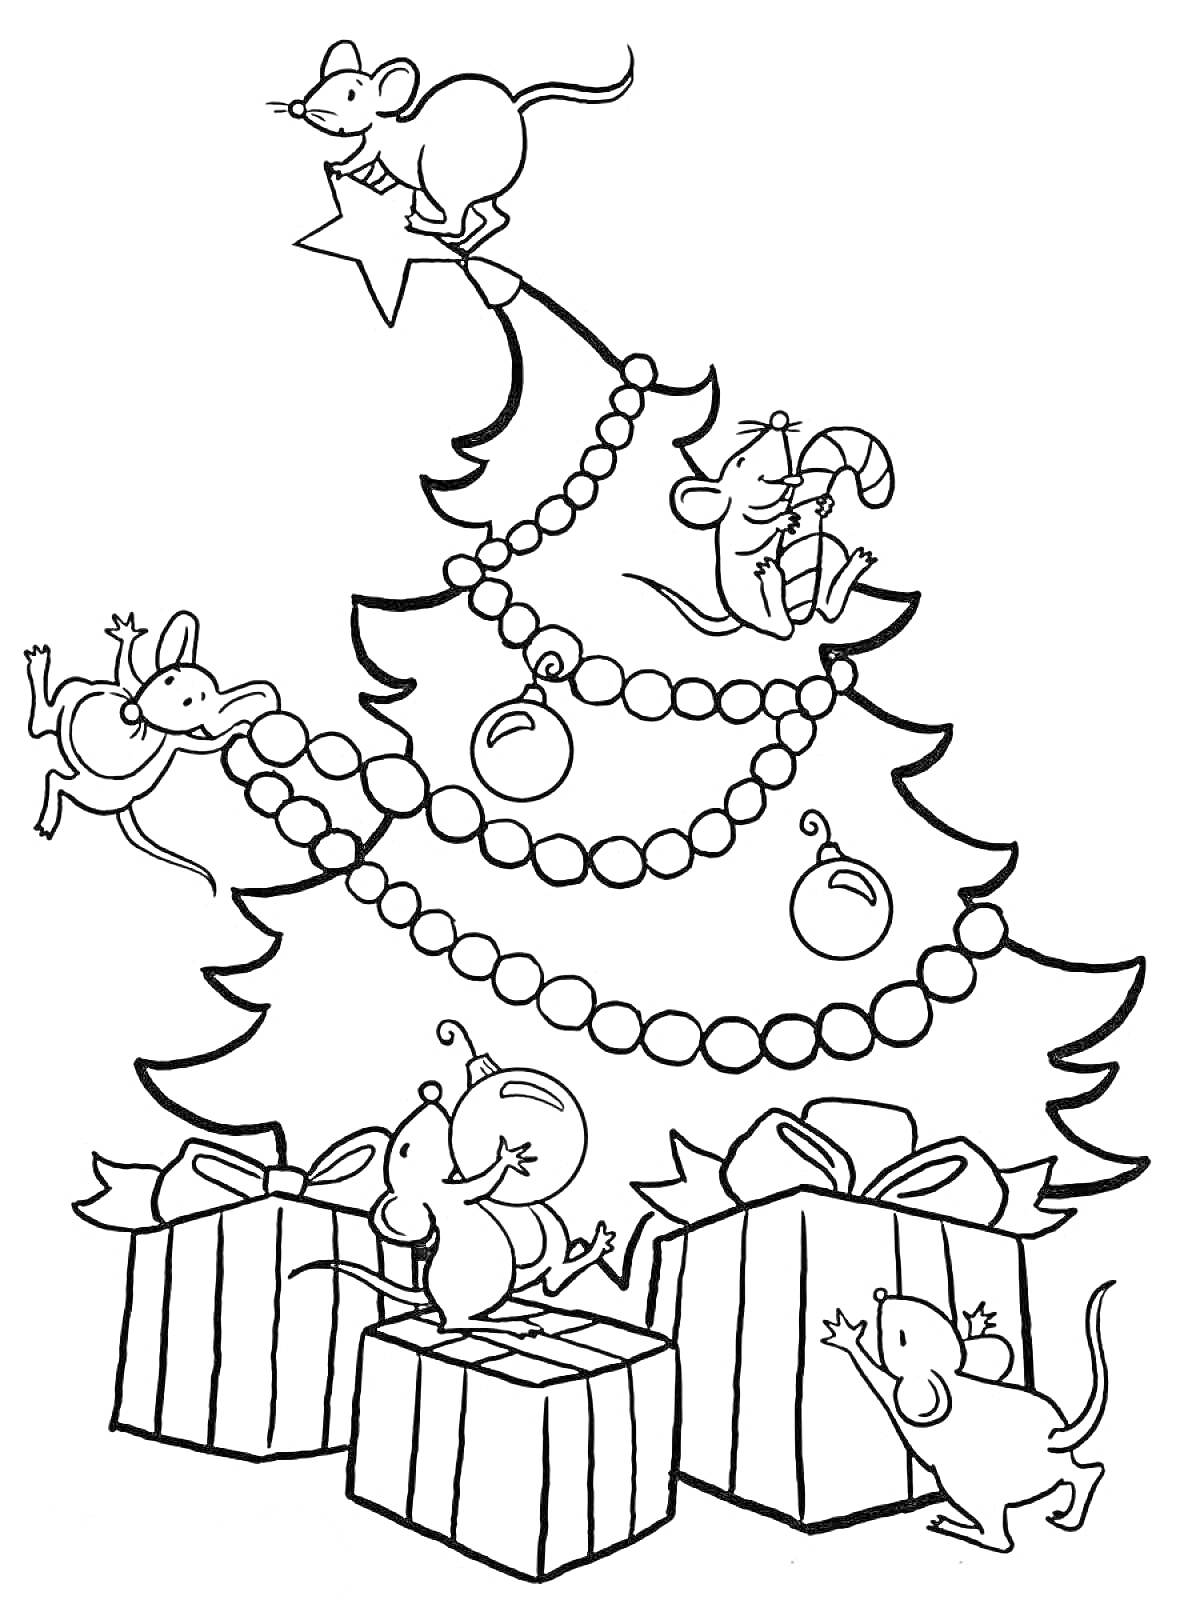 Раскраска Новогодняя елка с мышатами, гирляндой, шарами и подарками